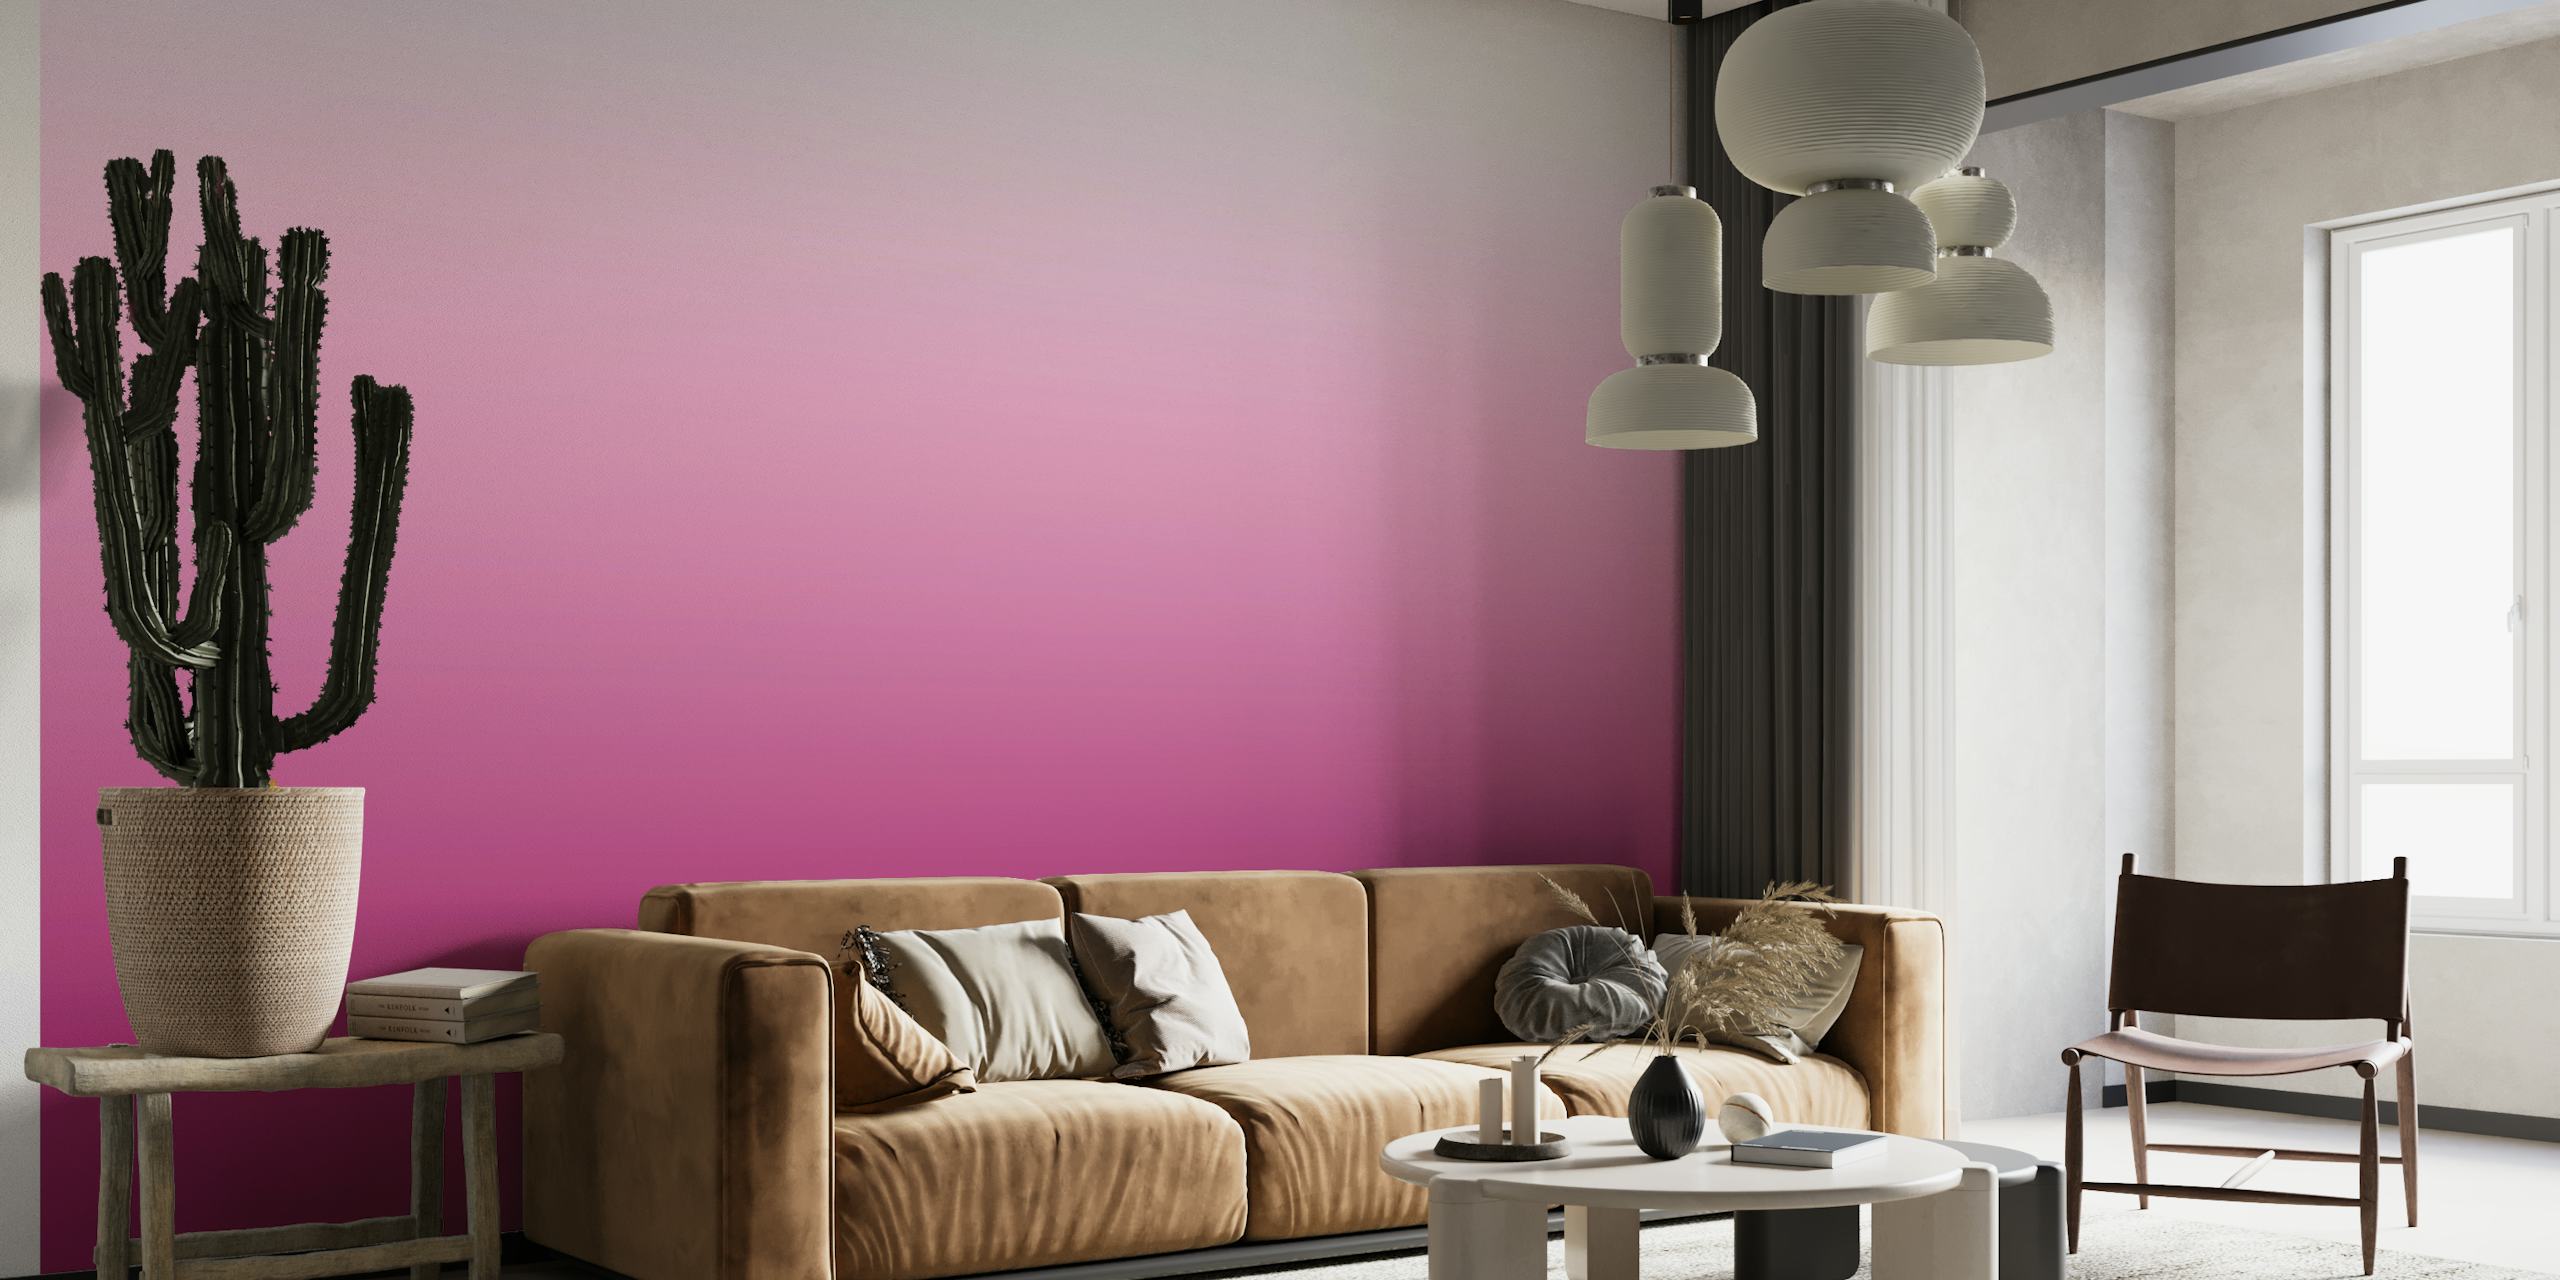 Elegantní fototapeta French Plum Gradient s plynulým přechodem od tmavě fialové k jemné růžové.